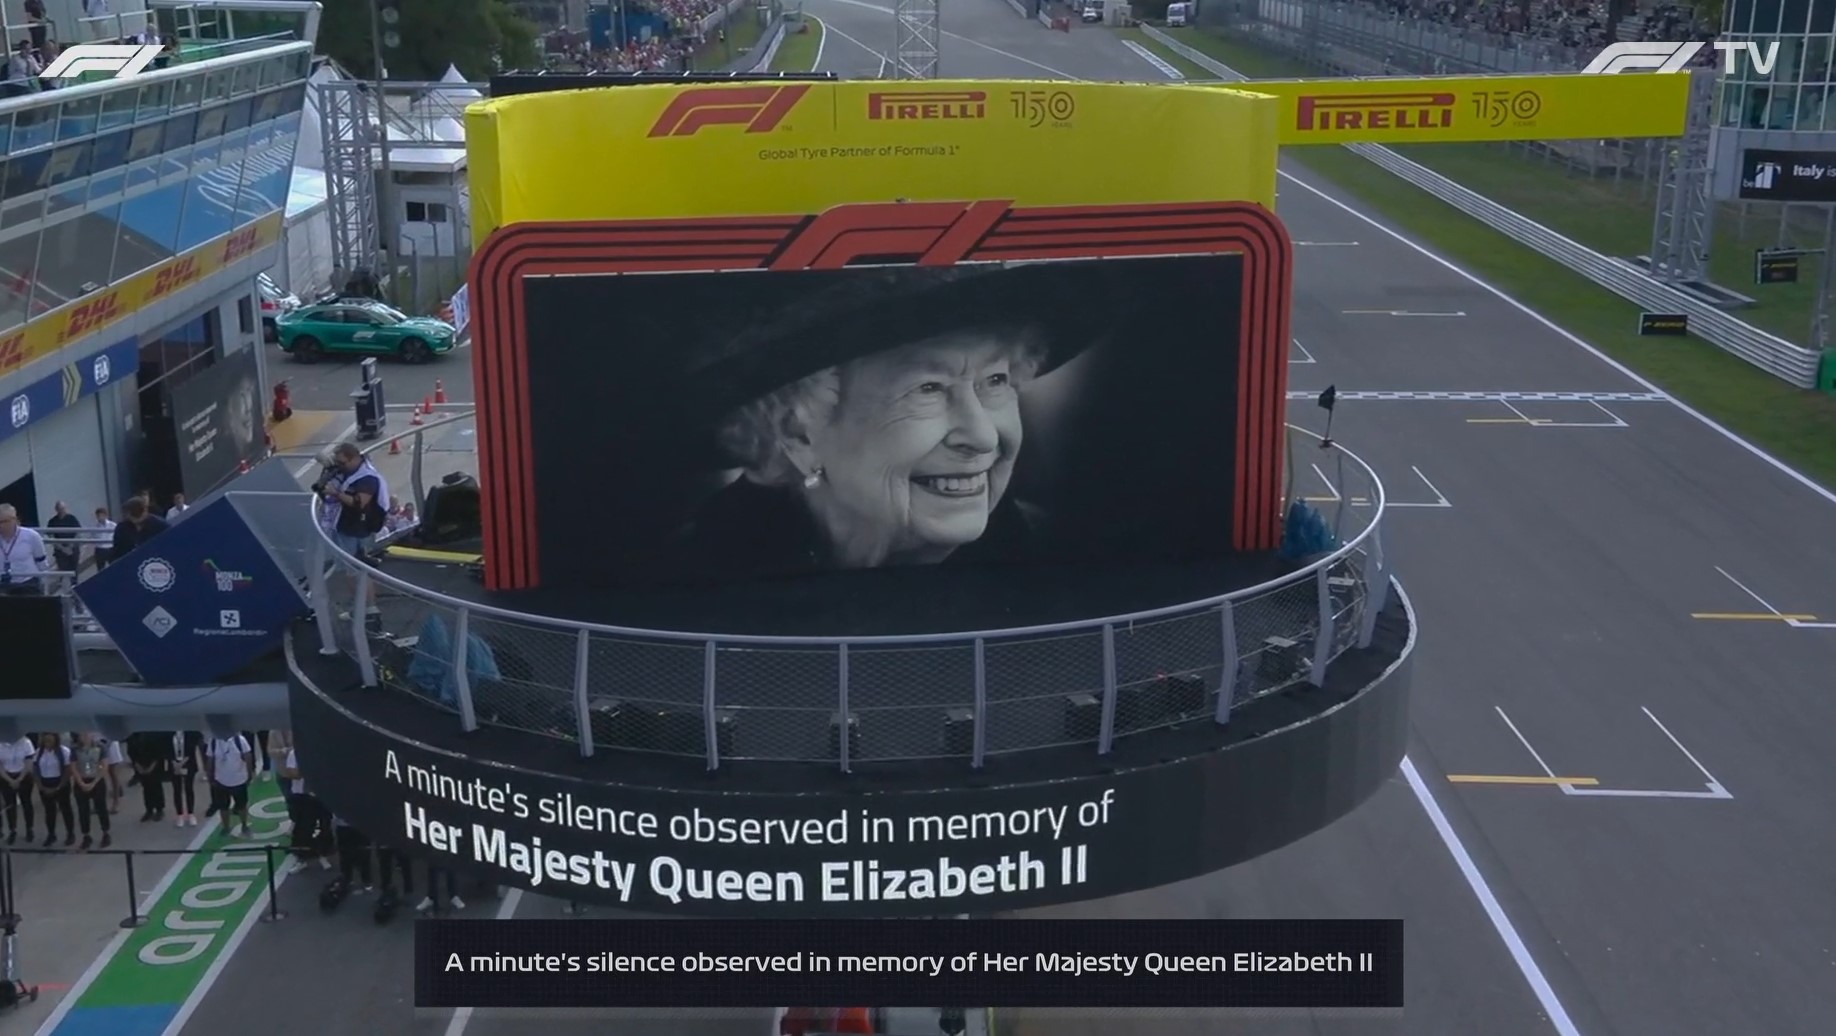 La minute de silence observée à Monza pour la disparition de la Reine Elizabeth II